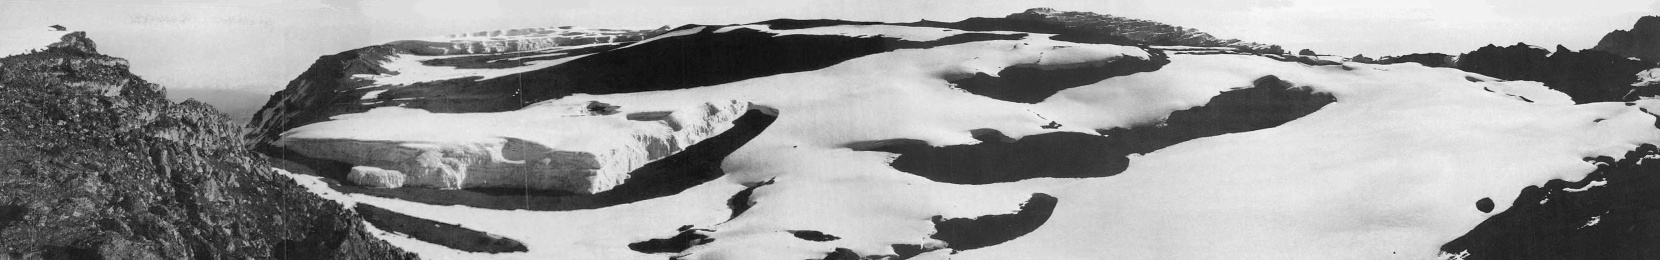 Der Furtwängler Gletscher in der Kibo-Kaldera im August 1973.Aufnahmestandpunkt am Uhuru Peak ( 5.895 m.a.S.L. ) mit Blick von Nord-West ( Kibo-Kaldera mit Furtwängler Gletscher) nach Osten (Mawenzi) - © Stefan Hastenrath [7]